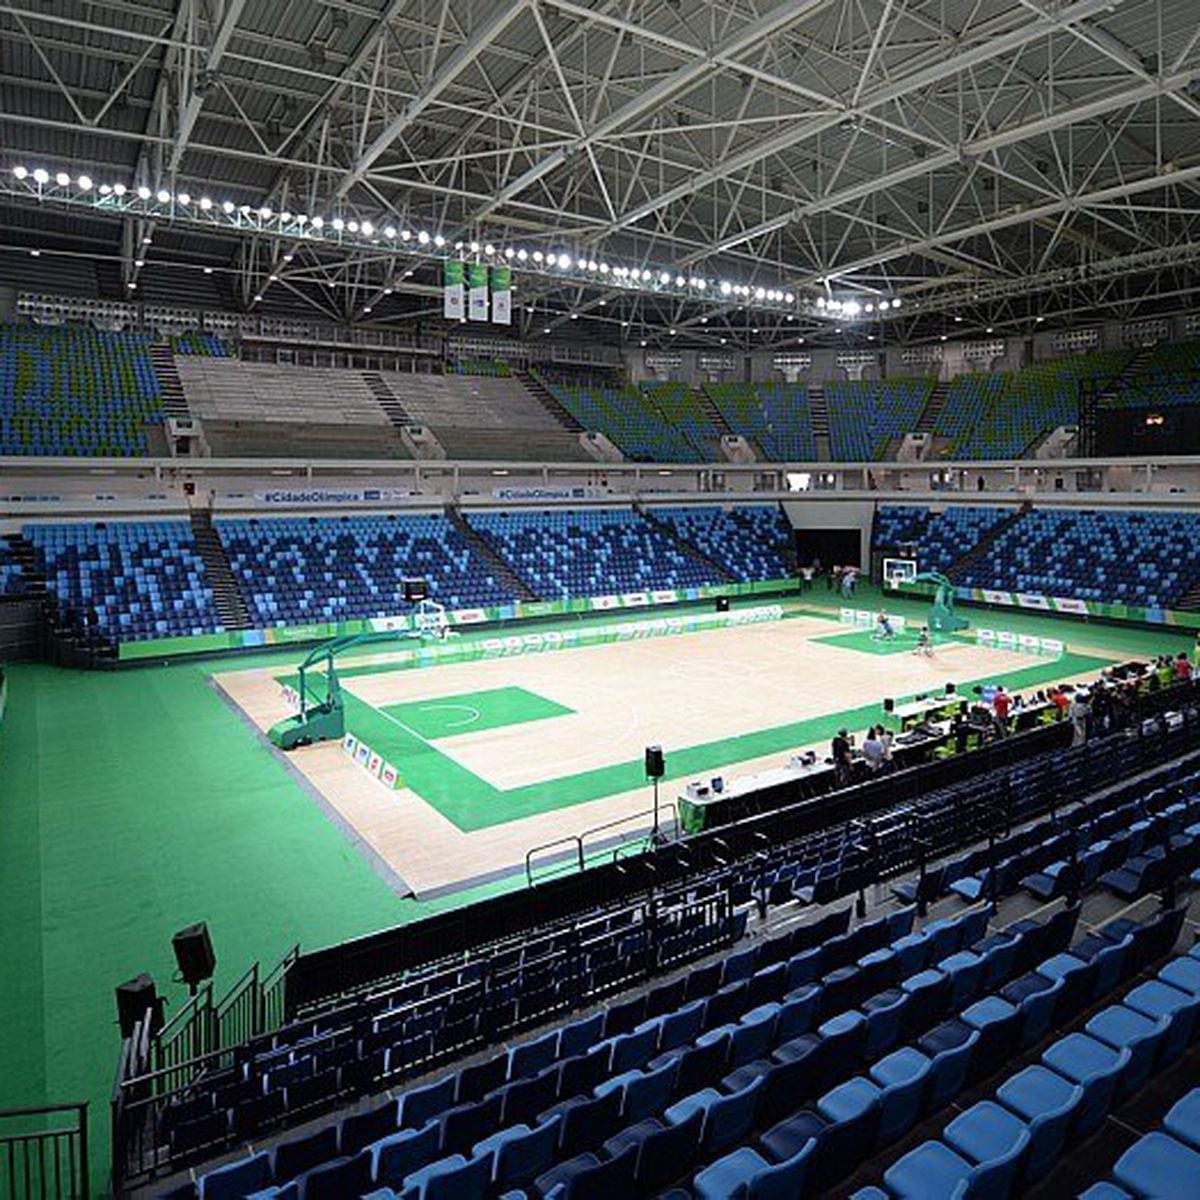 Seleções Brasileiras terminam Mundial de basquete em cadeira de